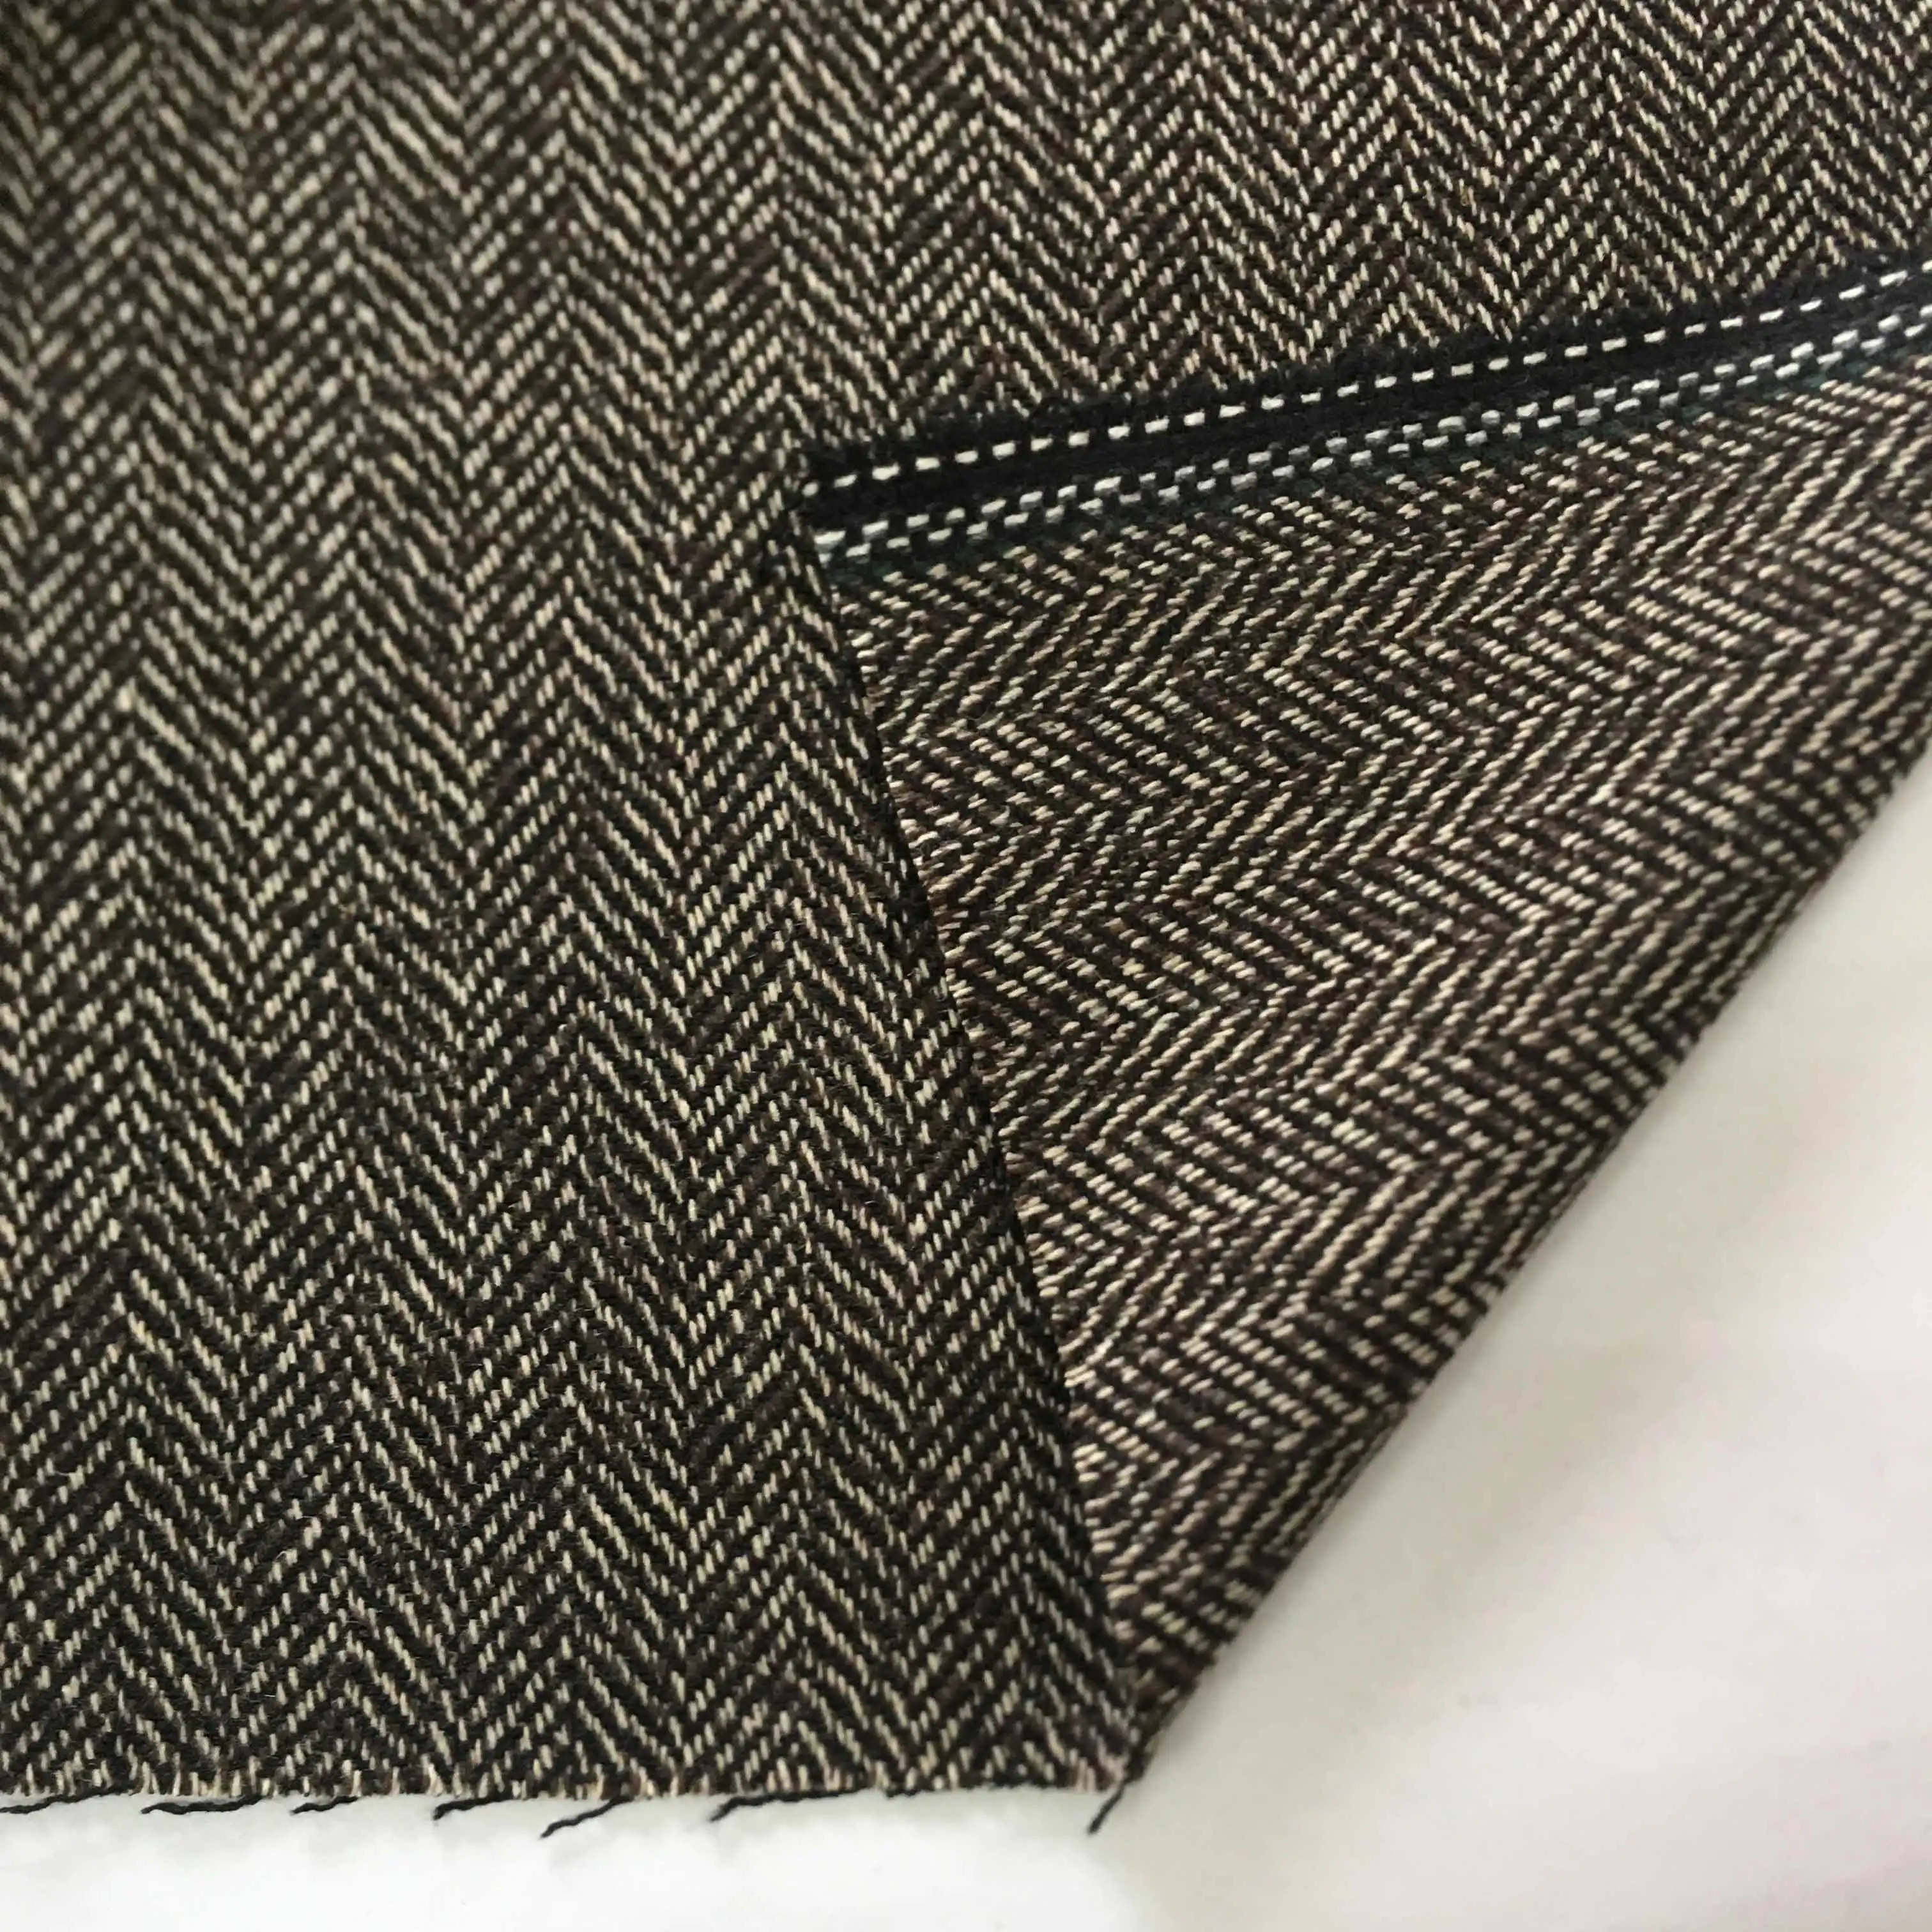 2019 neue tweed gemischt braun fischgräten wolle stoff für männer der jacke uniform